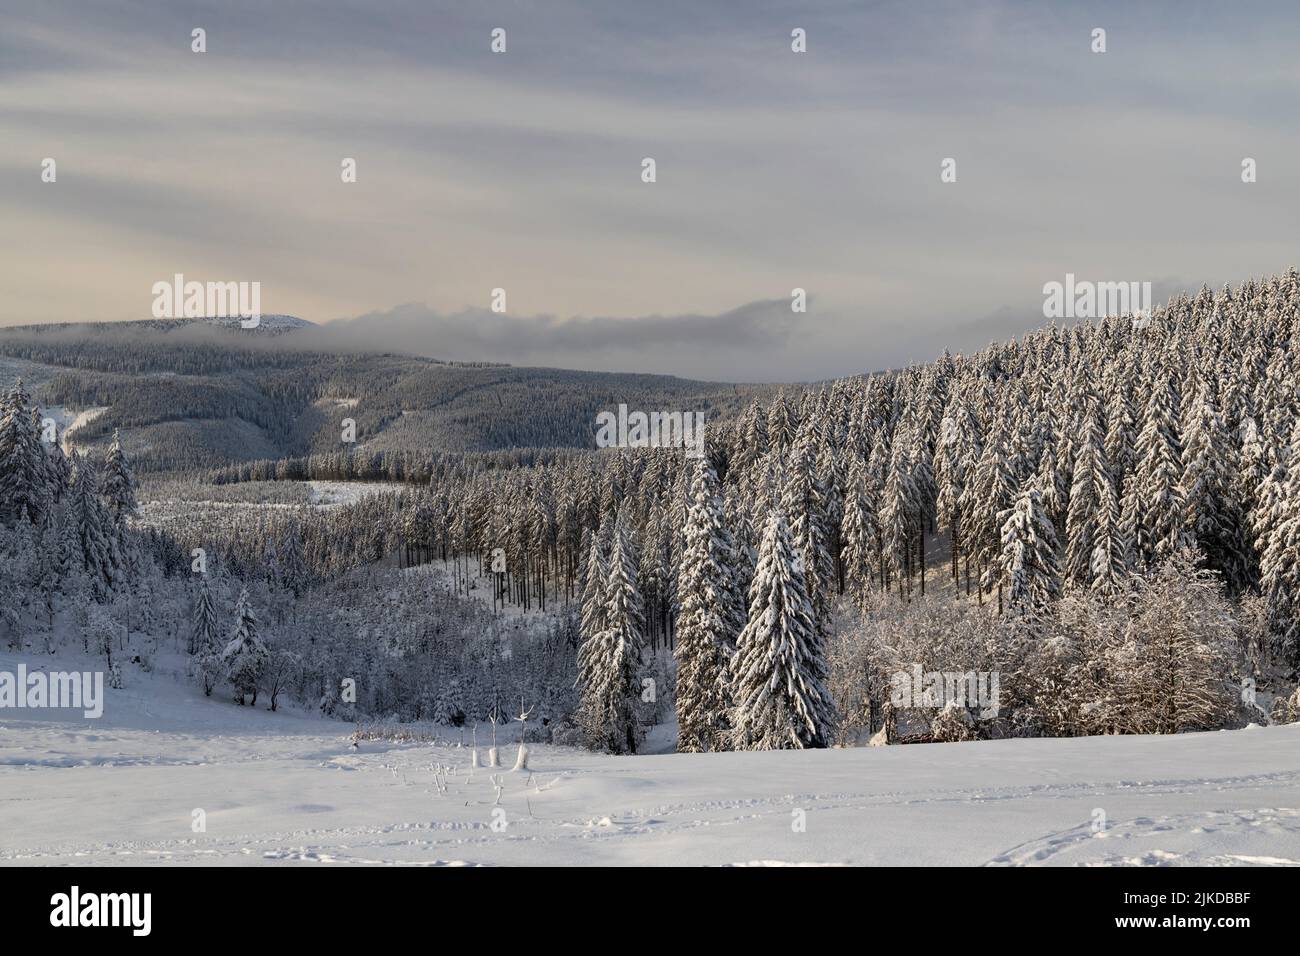 Winterlandschaft mit Snezka, Riesengebirge (Riesengebirge), Nordböhmen, Tschechien. Stockfoto